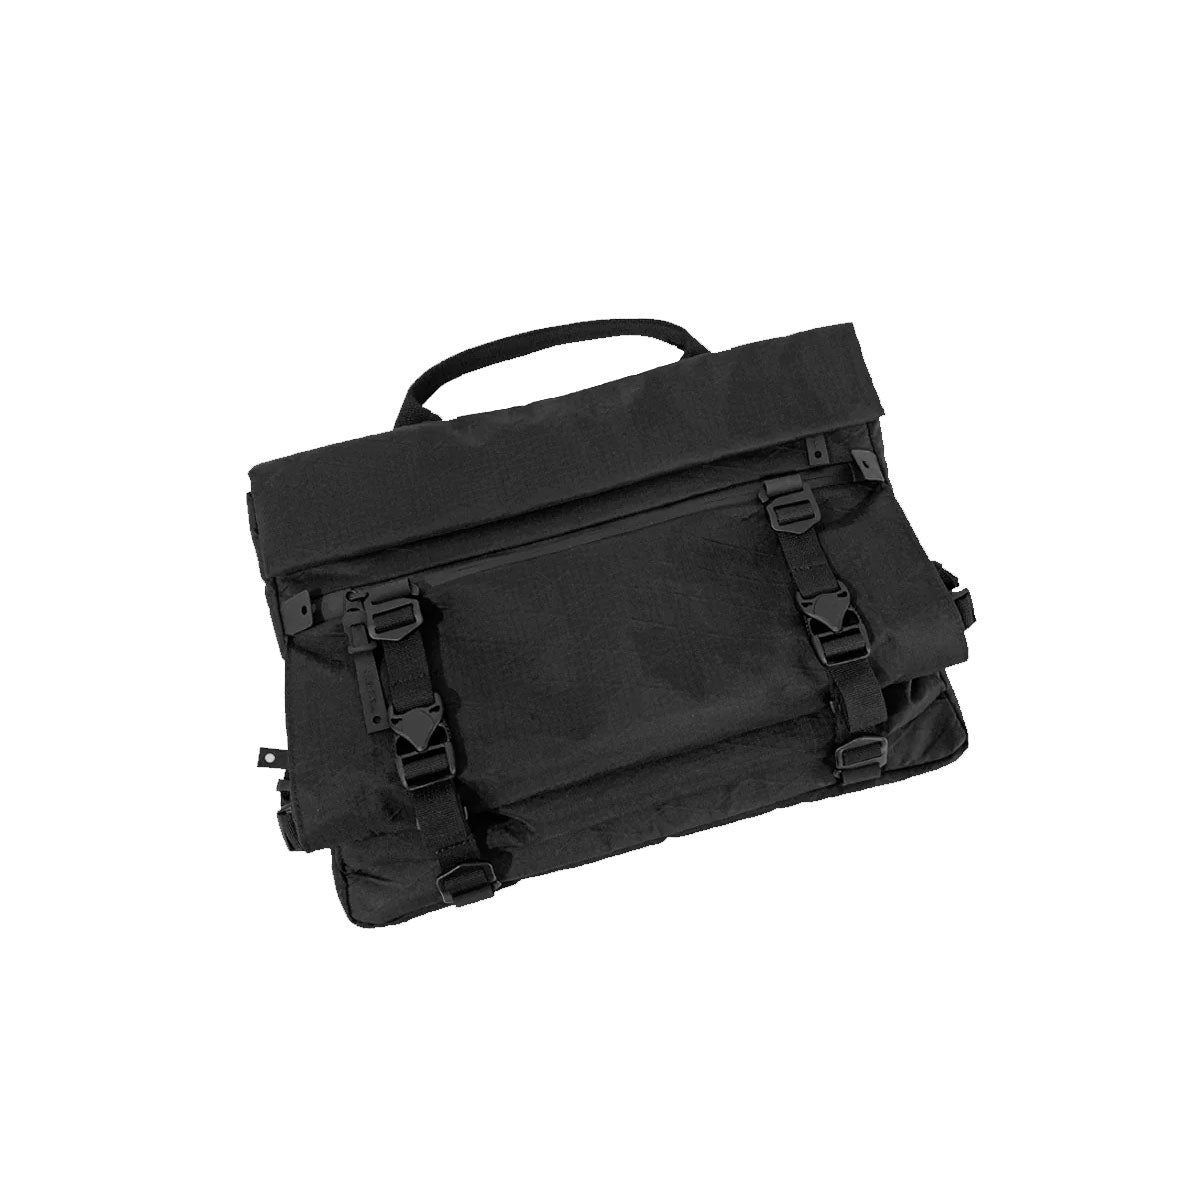 [PO] Code Of Bell : Apex Liner Max 2-Way Shoulder Bag